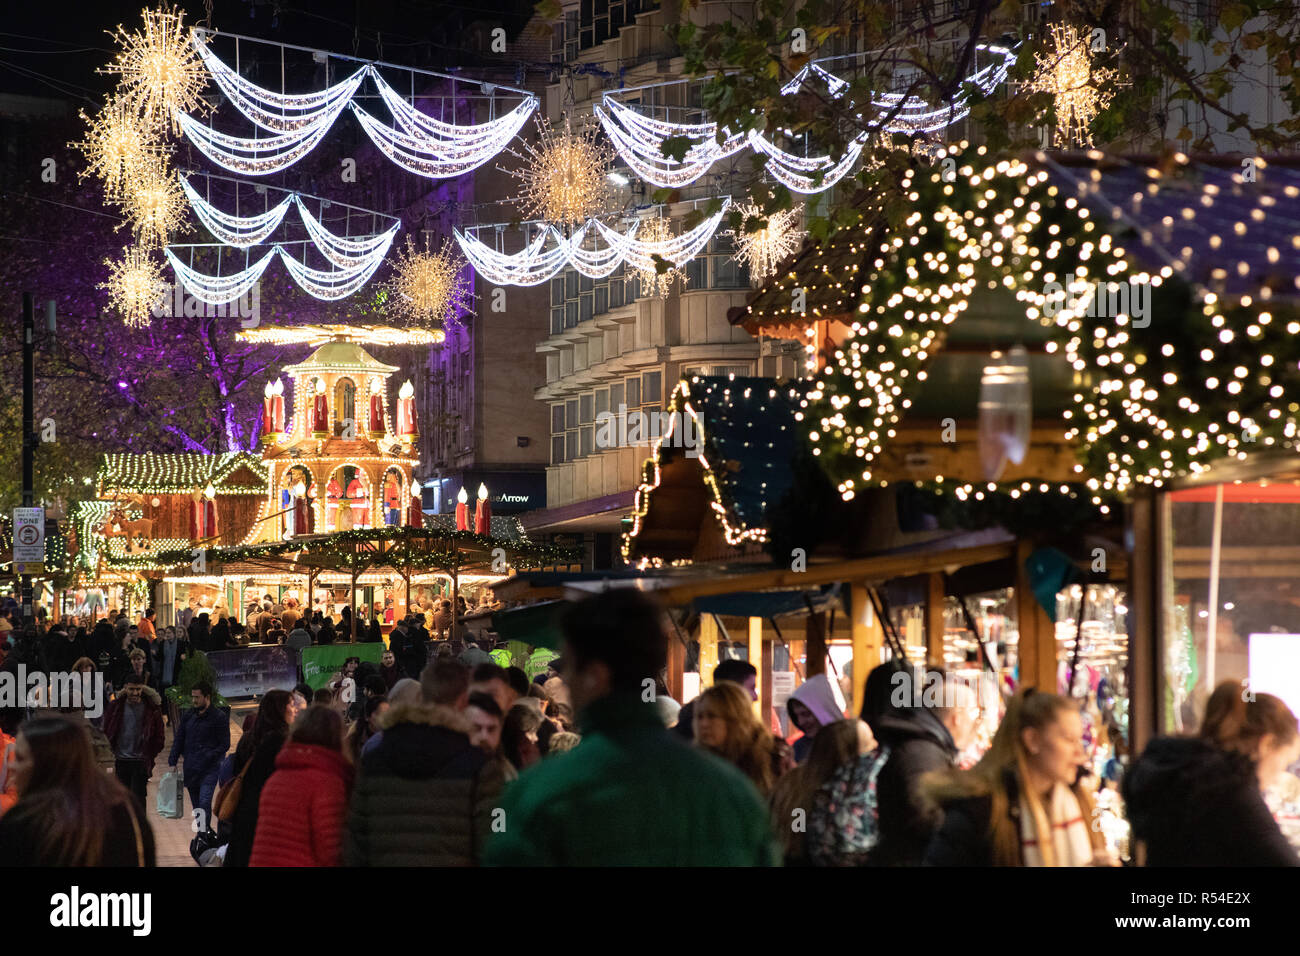 Les lumières de Noël entourant le marché allemand sur les nouvelles Street dans le centre-ville de Birmingham, England, UK. Banque D'Images